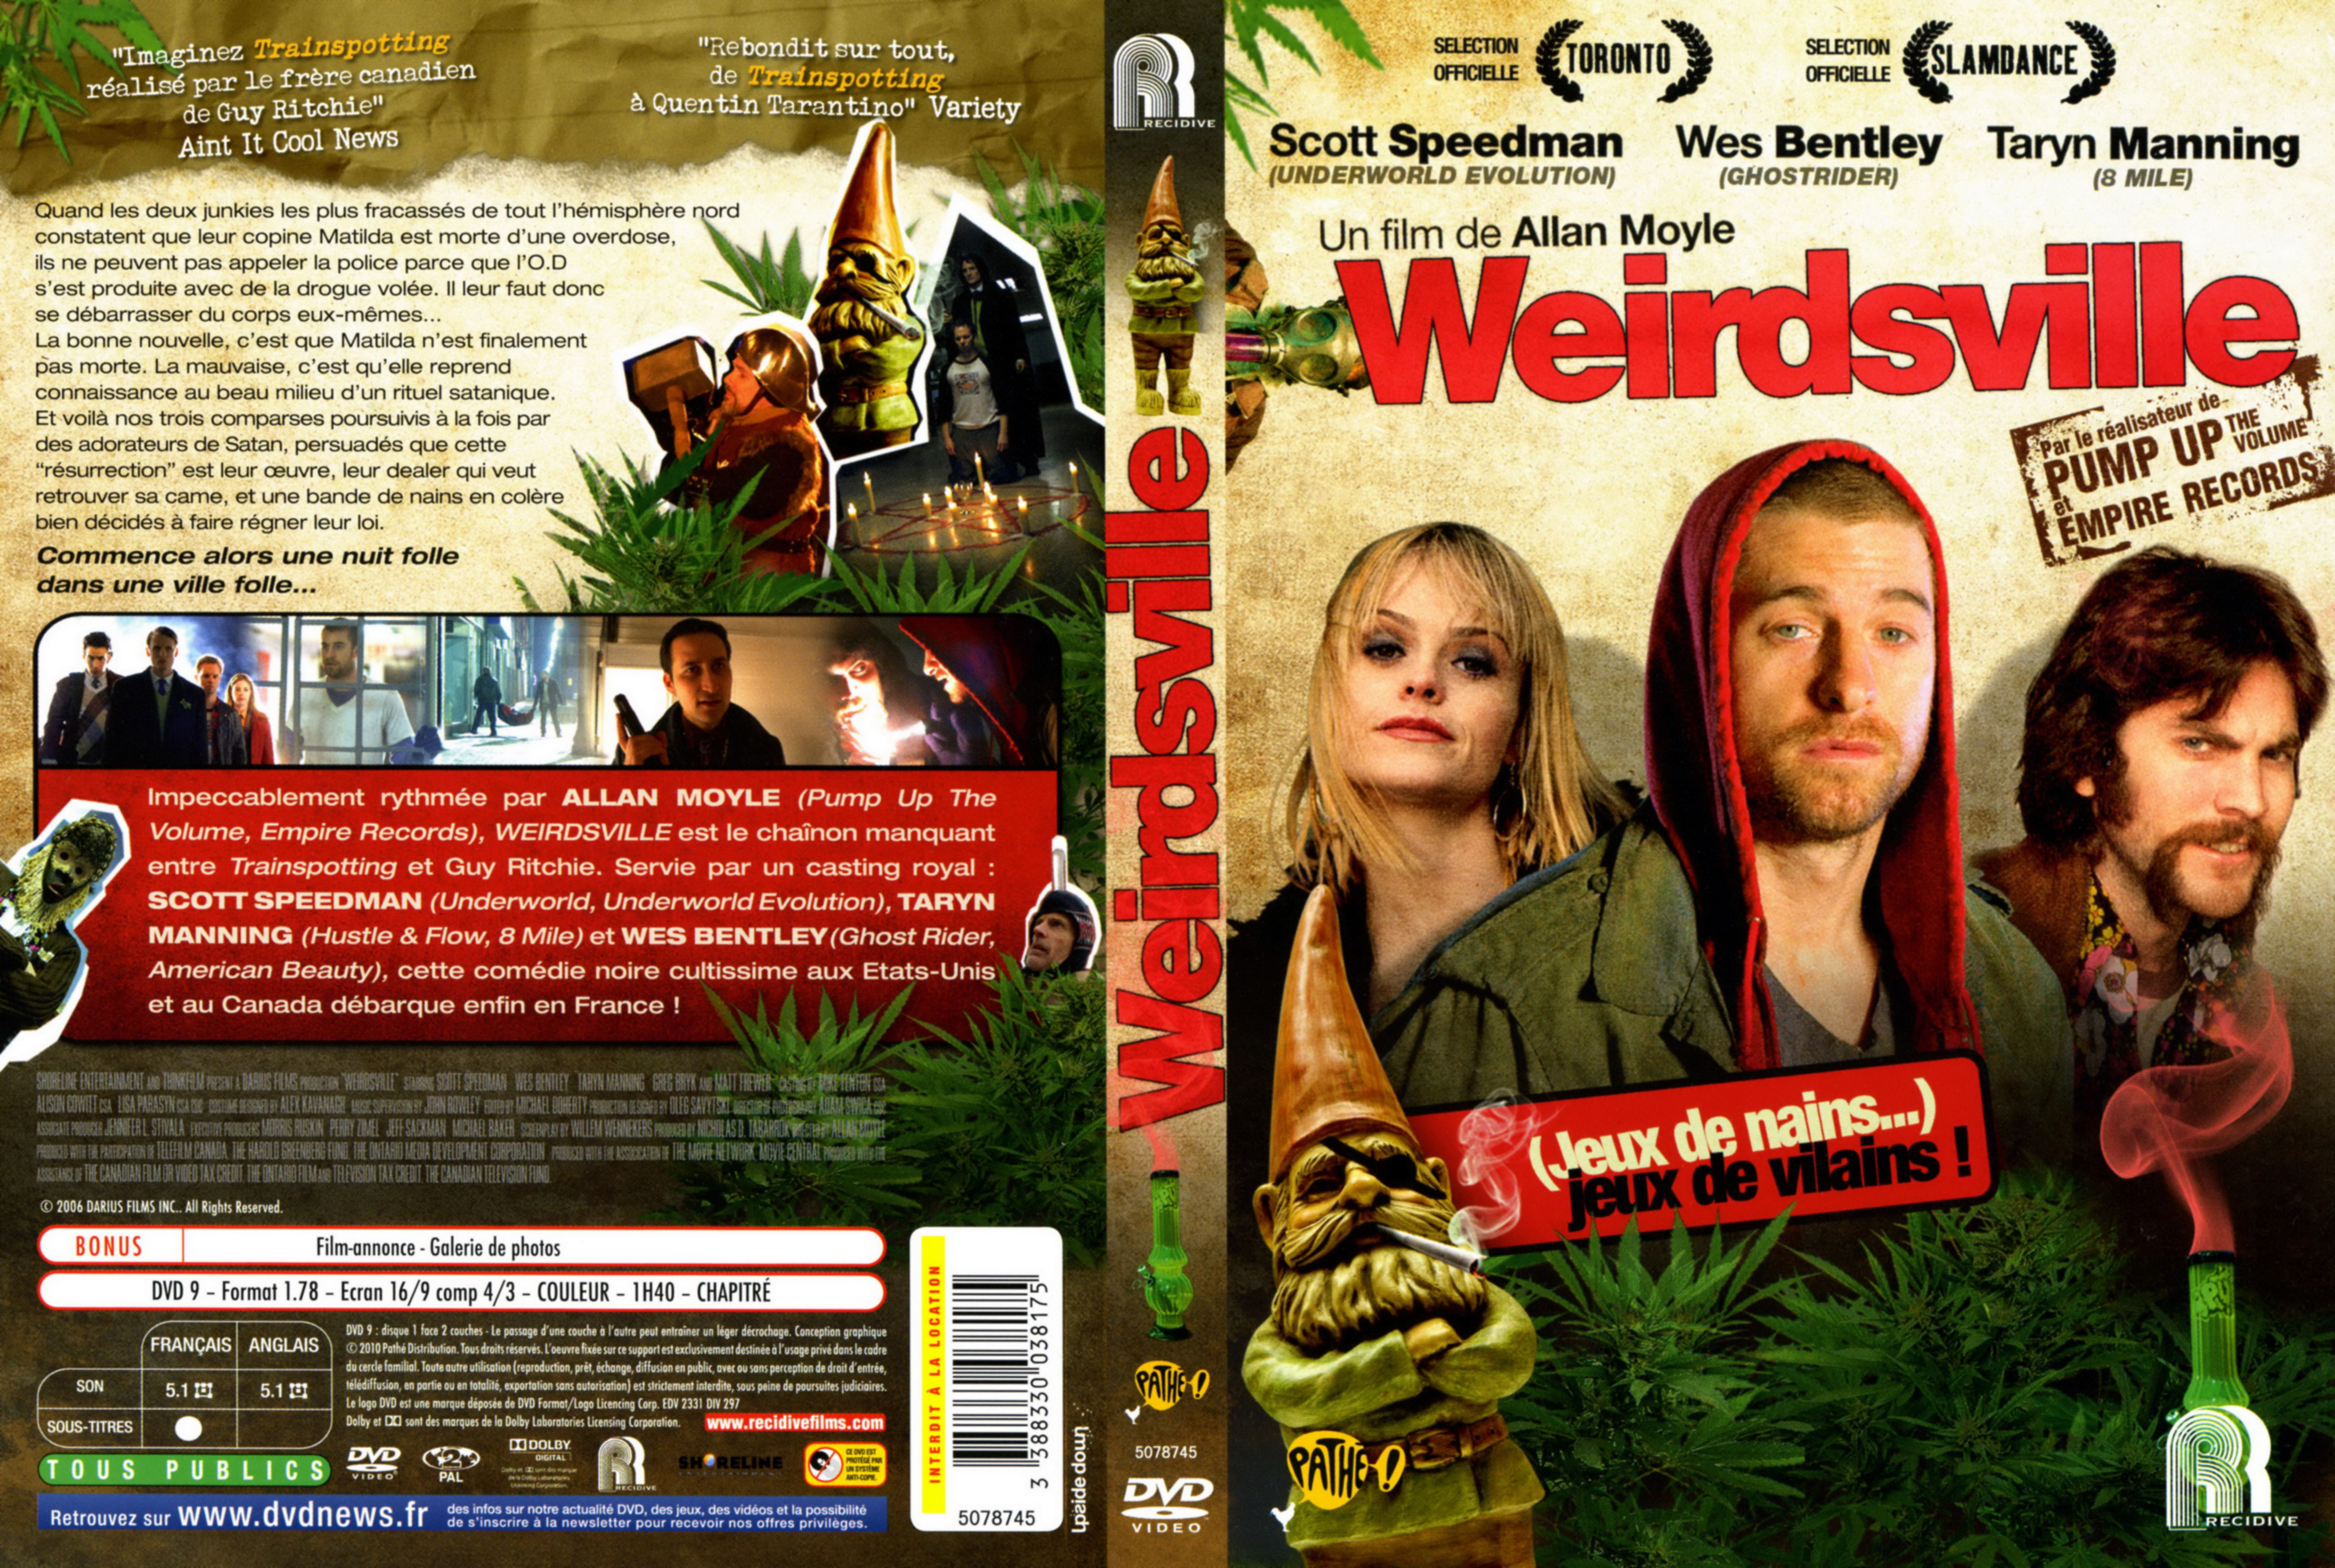 Jaquette DVD Weirdsville